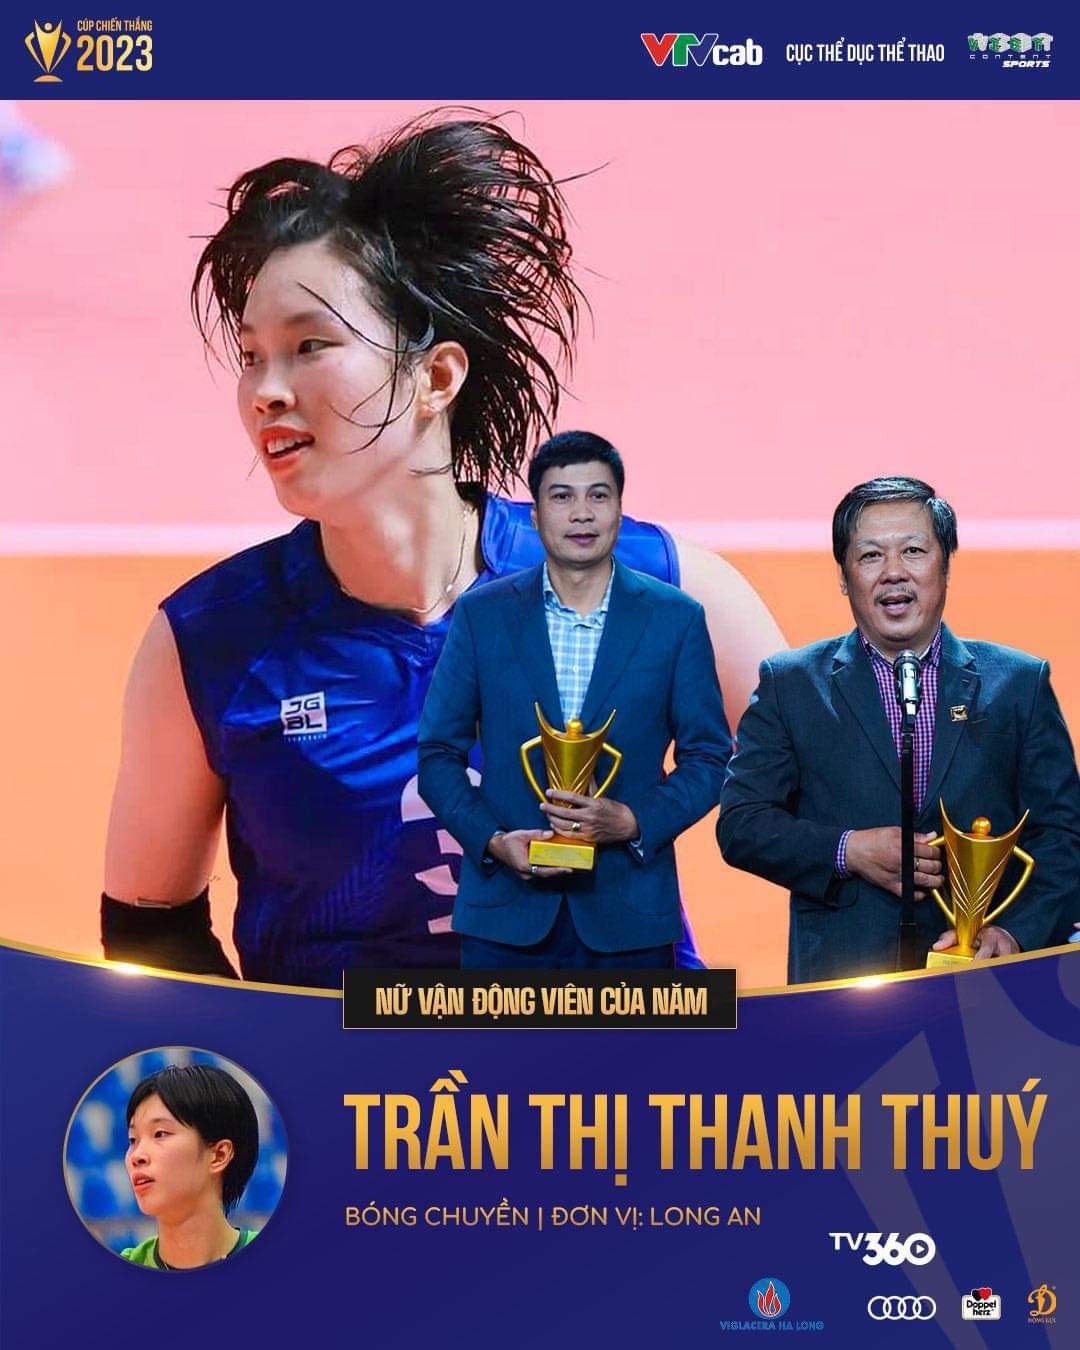 'Chân dài' bóng chuyền Trần Thị Thanh Thúy bất ngờ đăng quang Cúp chiến thắng 2023- Ảnh 1.